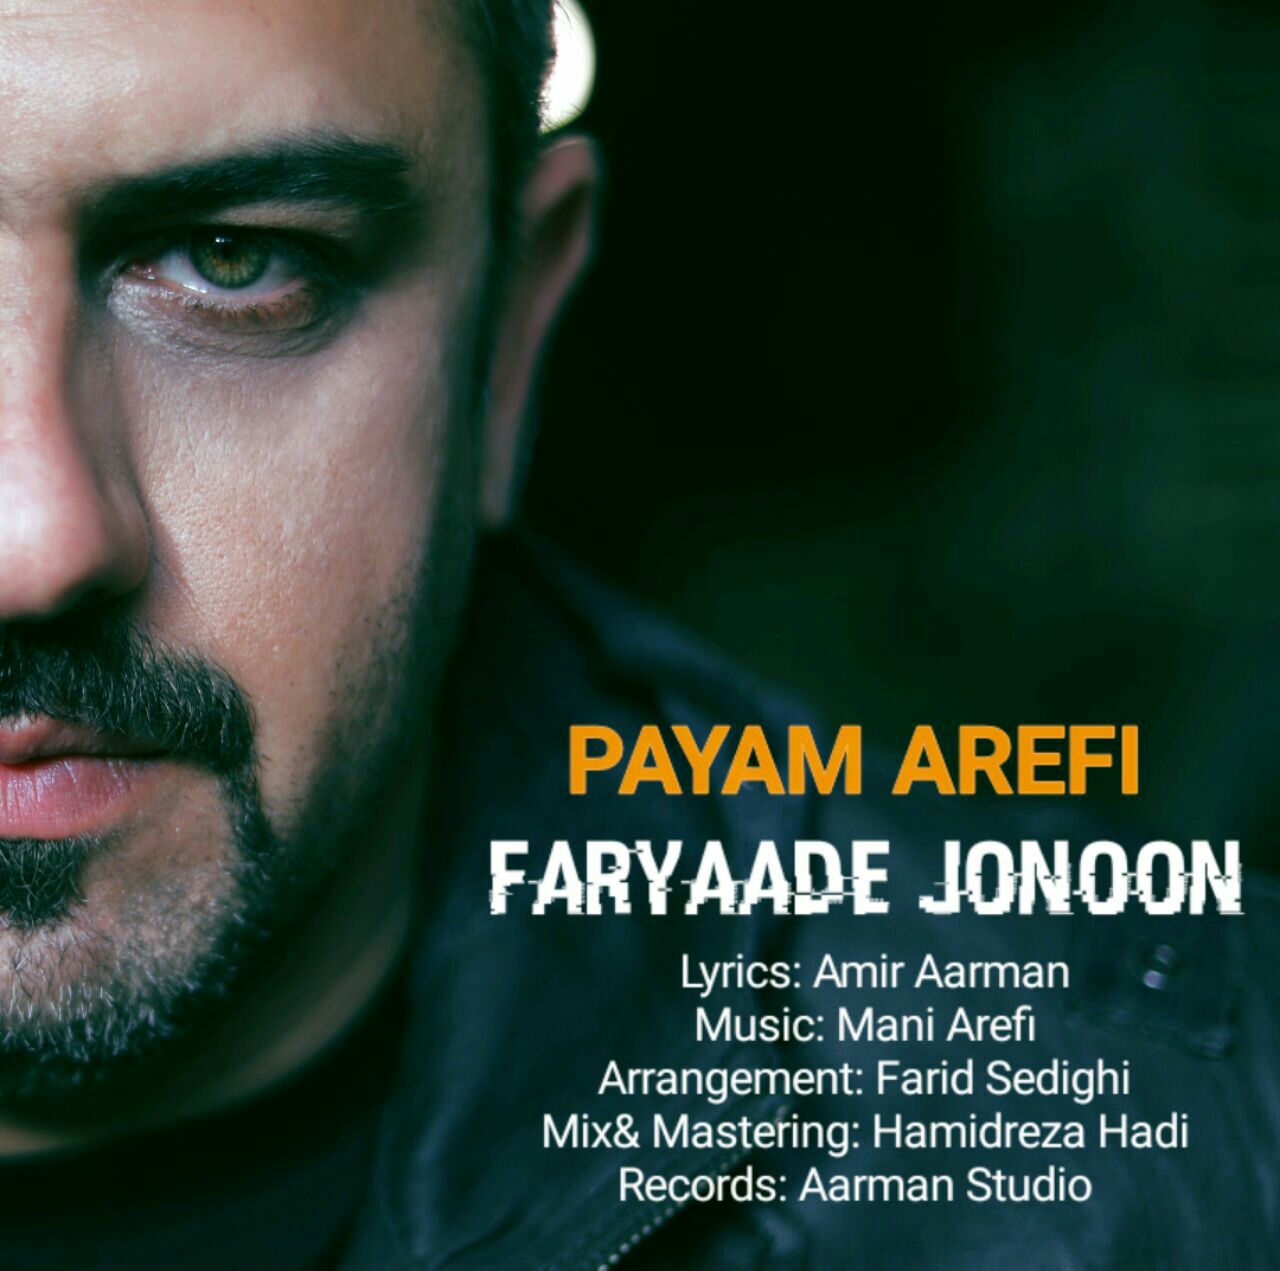 Payam Arefi – Faryaade Jonoon